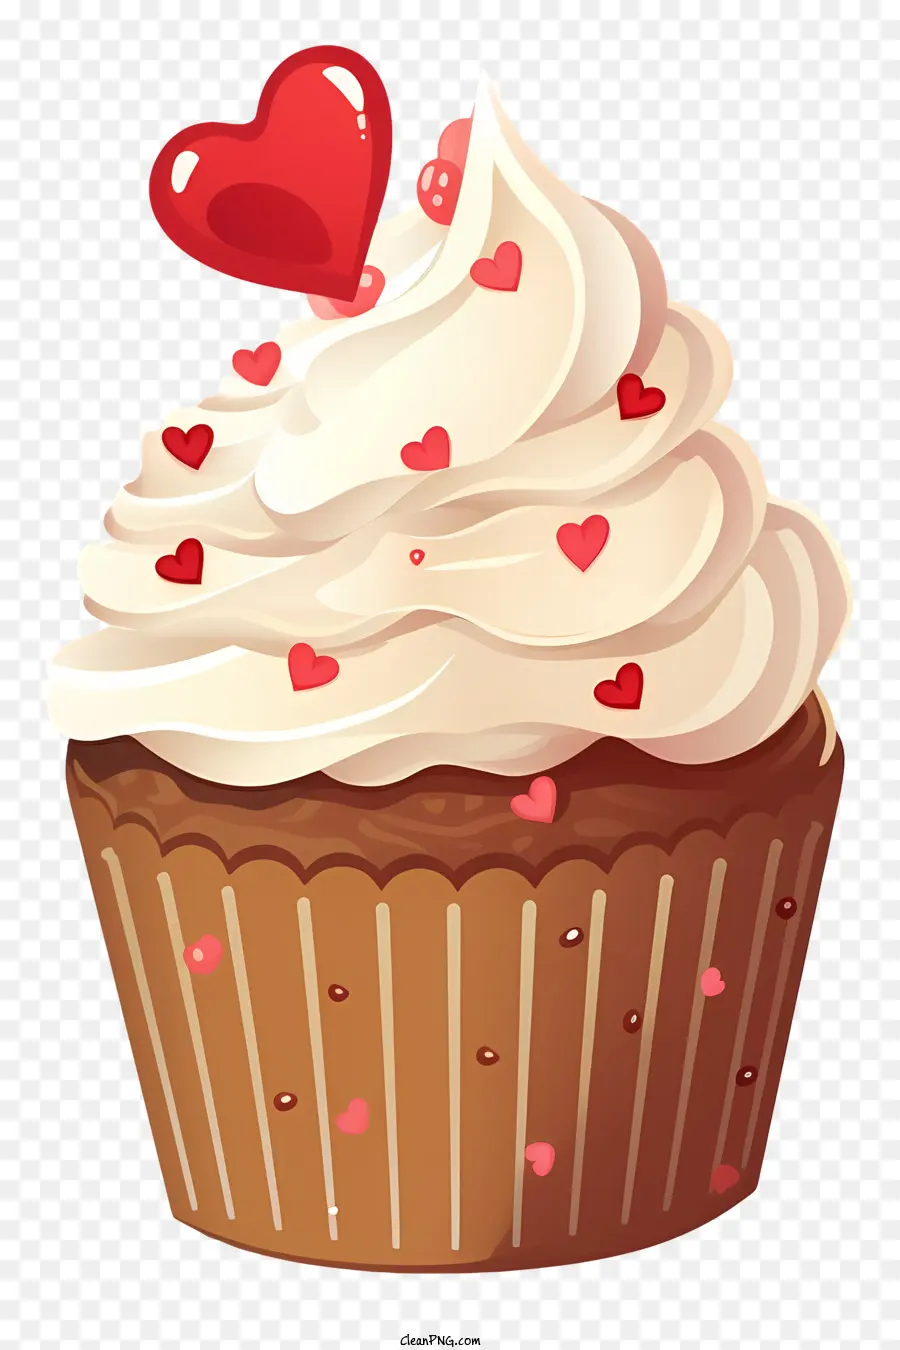 Cupcake Chocolate Cupcake cremige Zuckerguss rote Herz Rotherzgeformte Streusel - Detaillierter Cartoon -Schokoladen -Cupcake mit Herzstreuseln